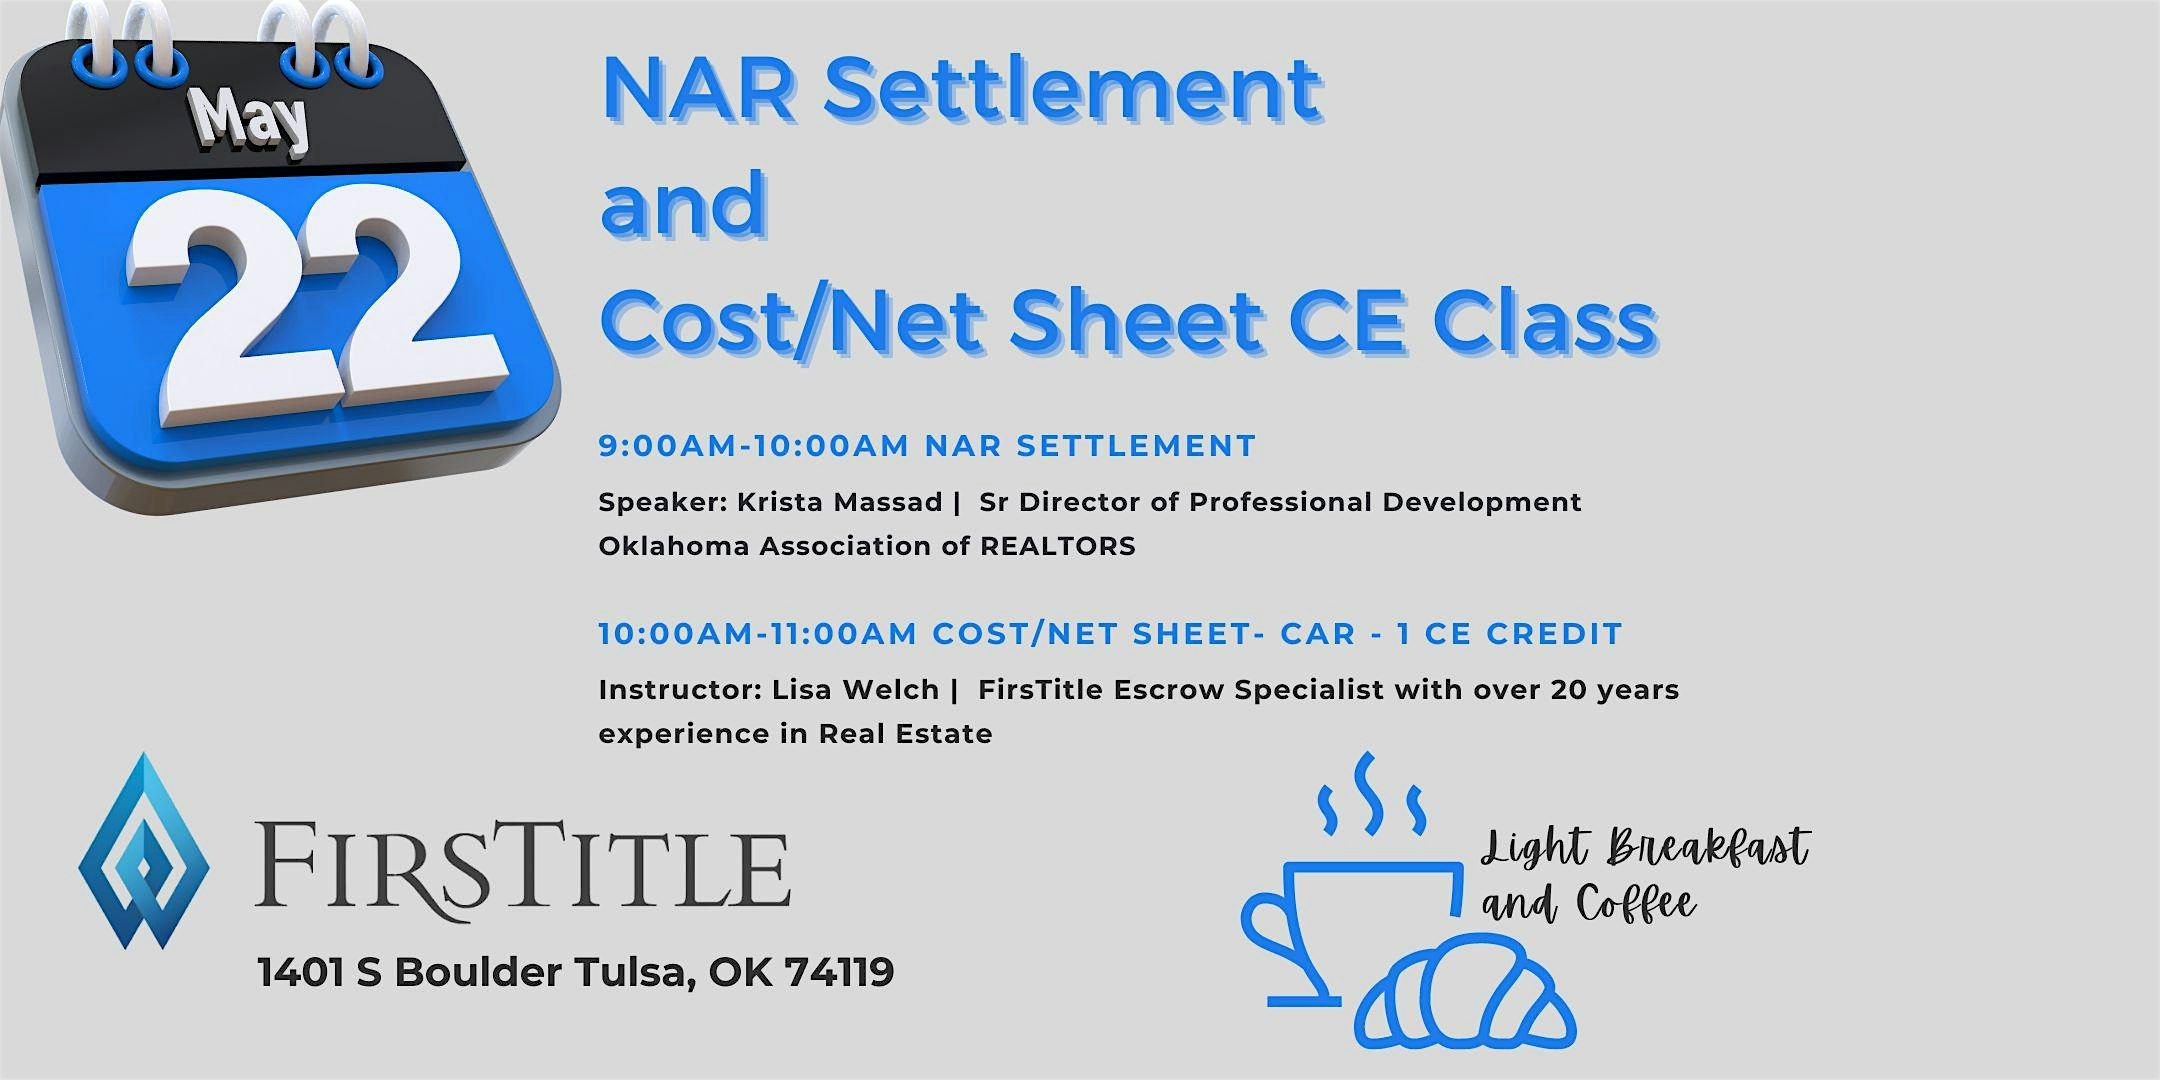 OAR & FirsTitle discuss NAR Settlement and Offering Cost\/Net Sheet CE Class